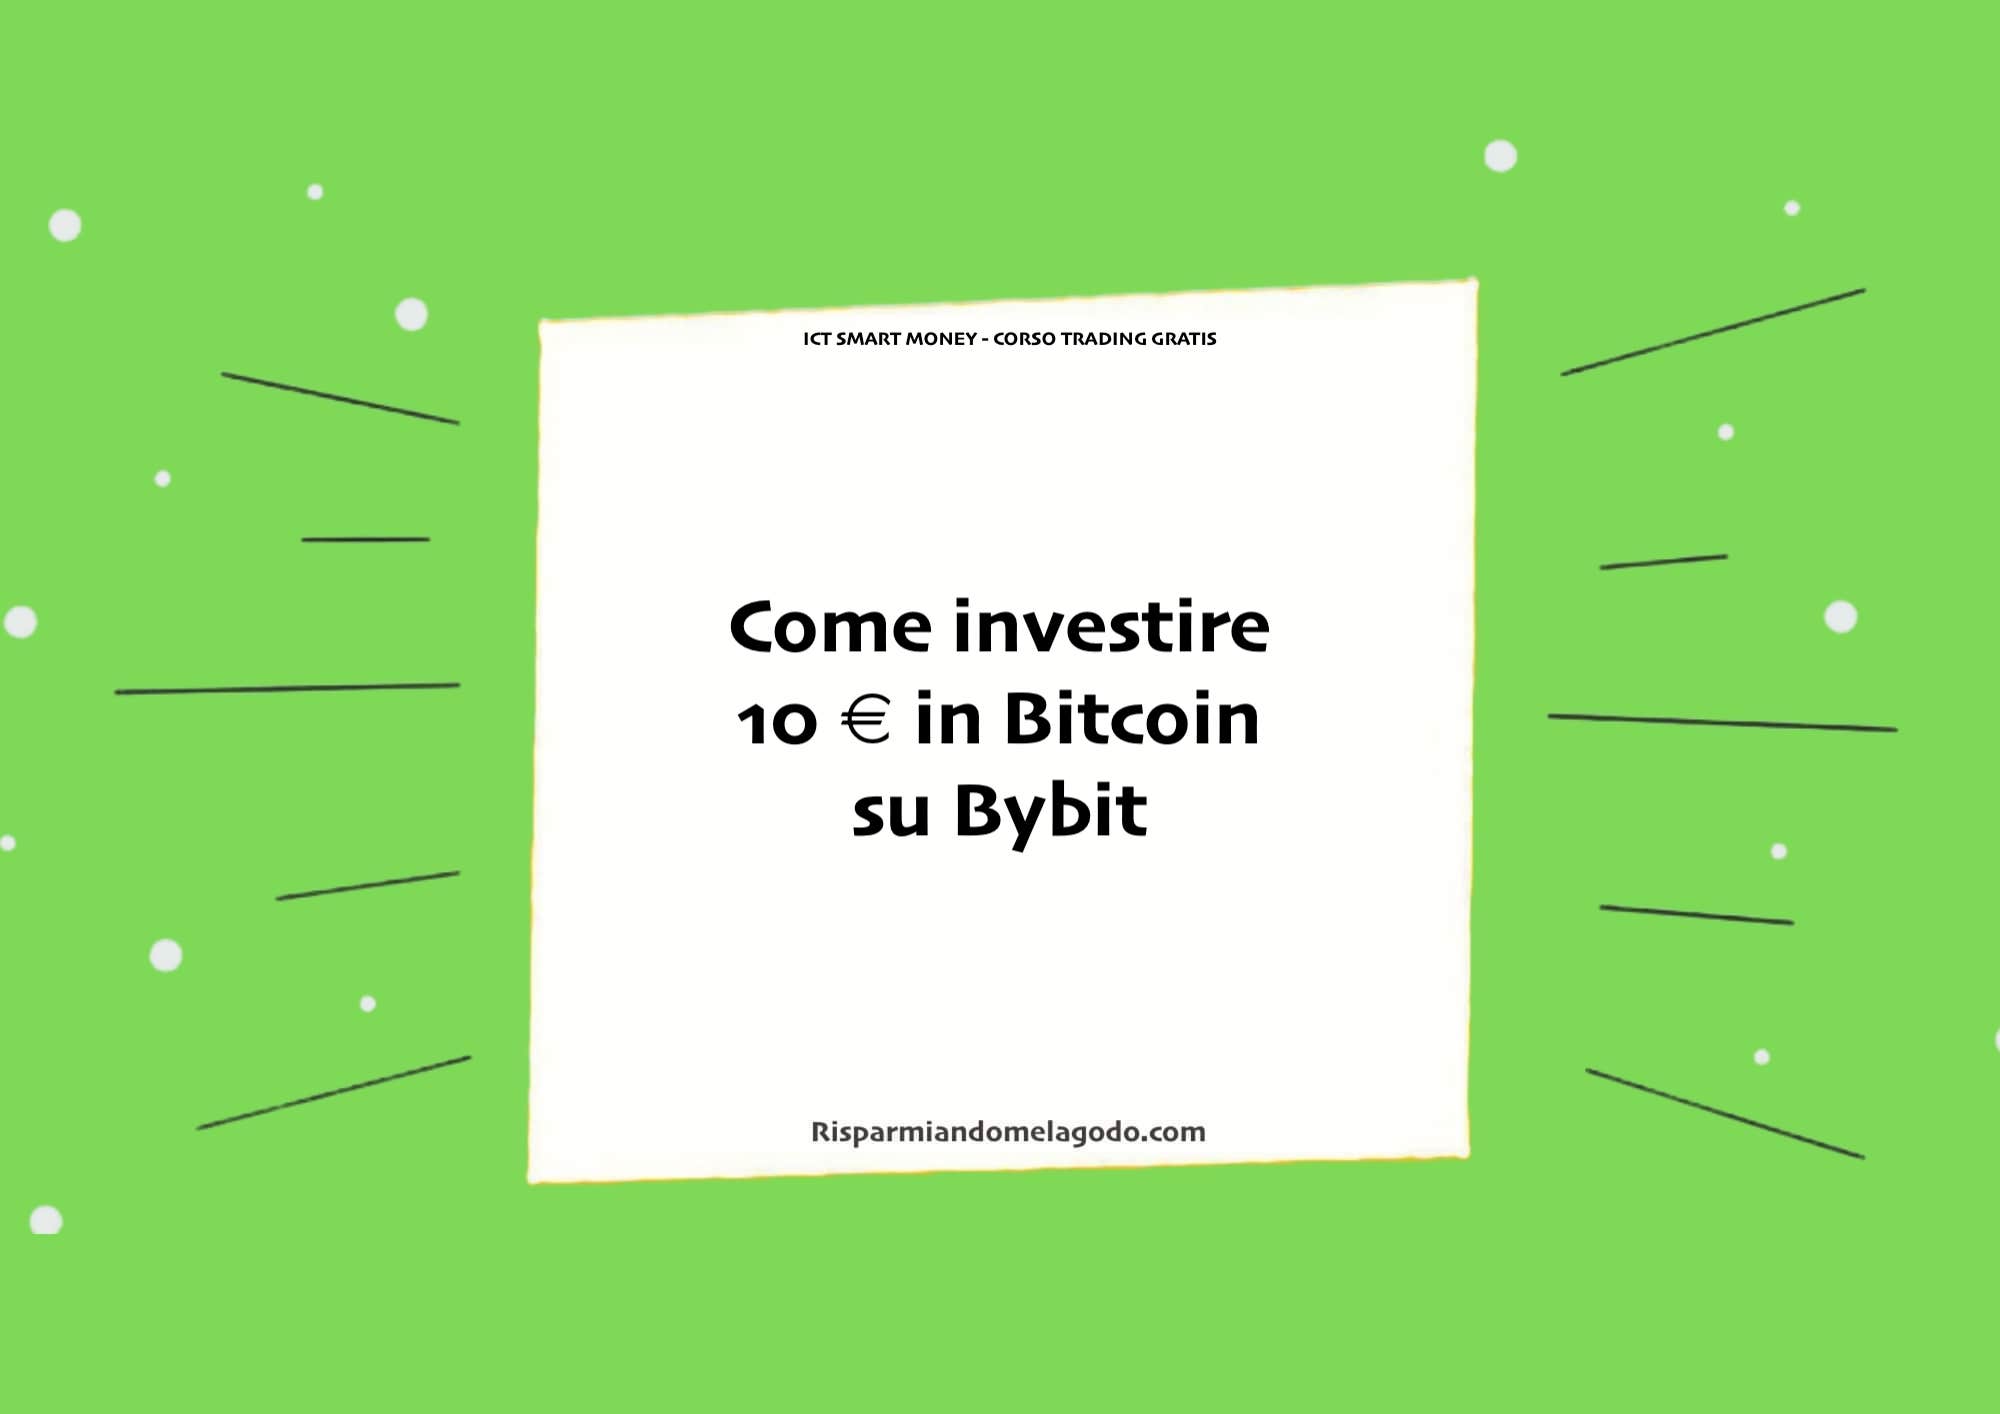 Come investire 10 € in Bitcoin su Bybit